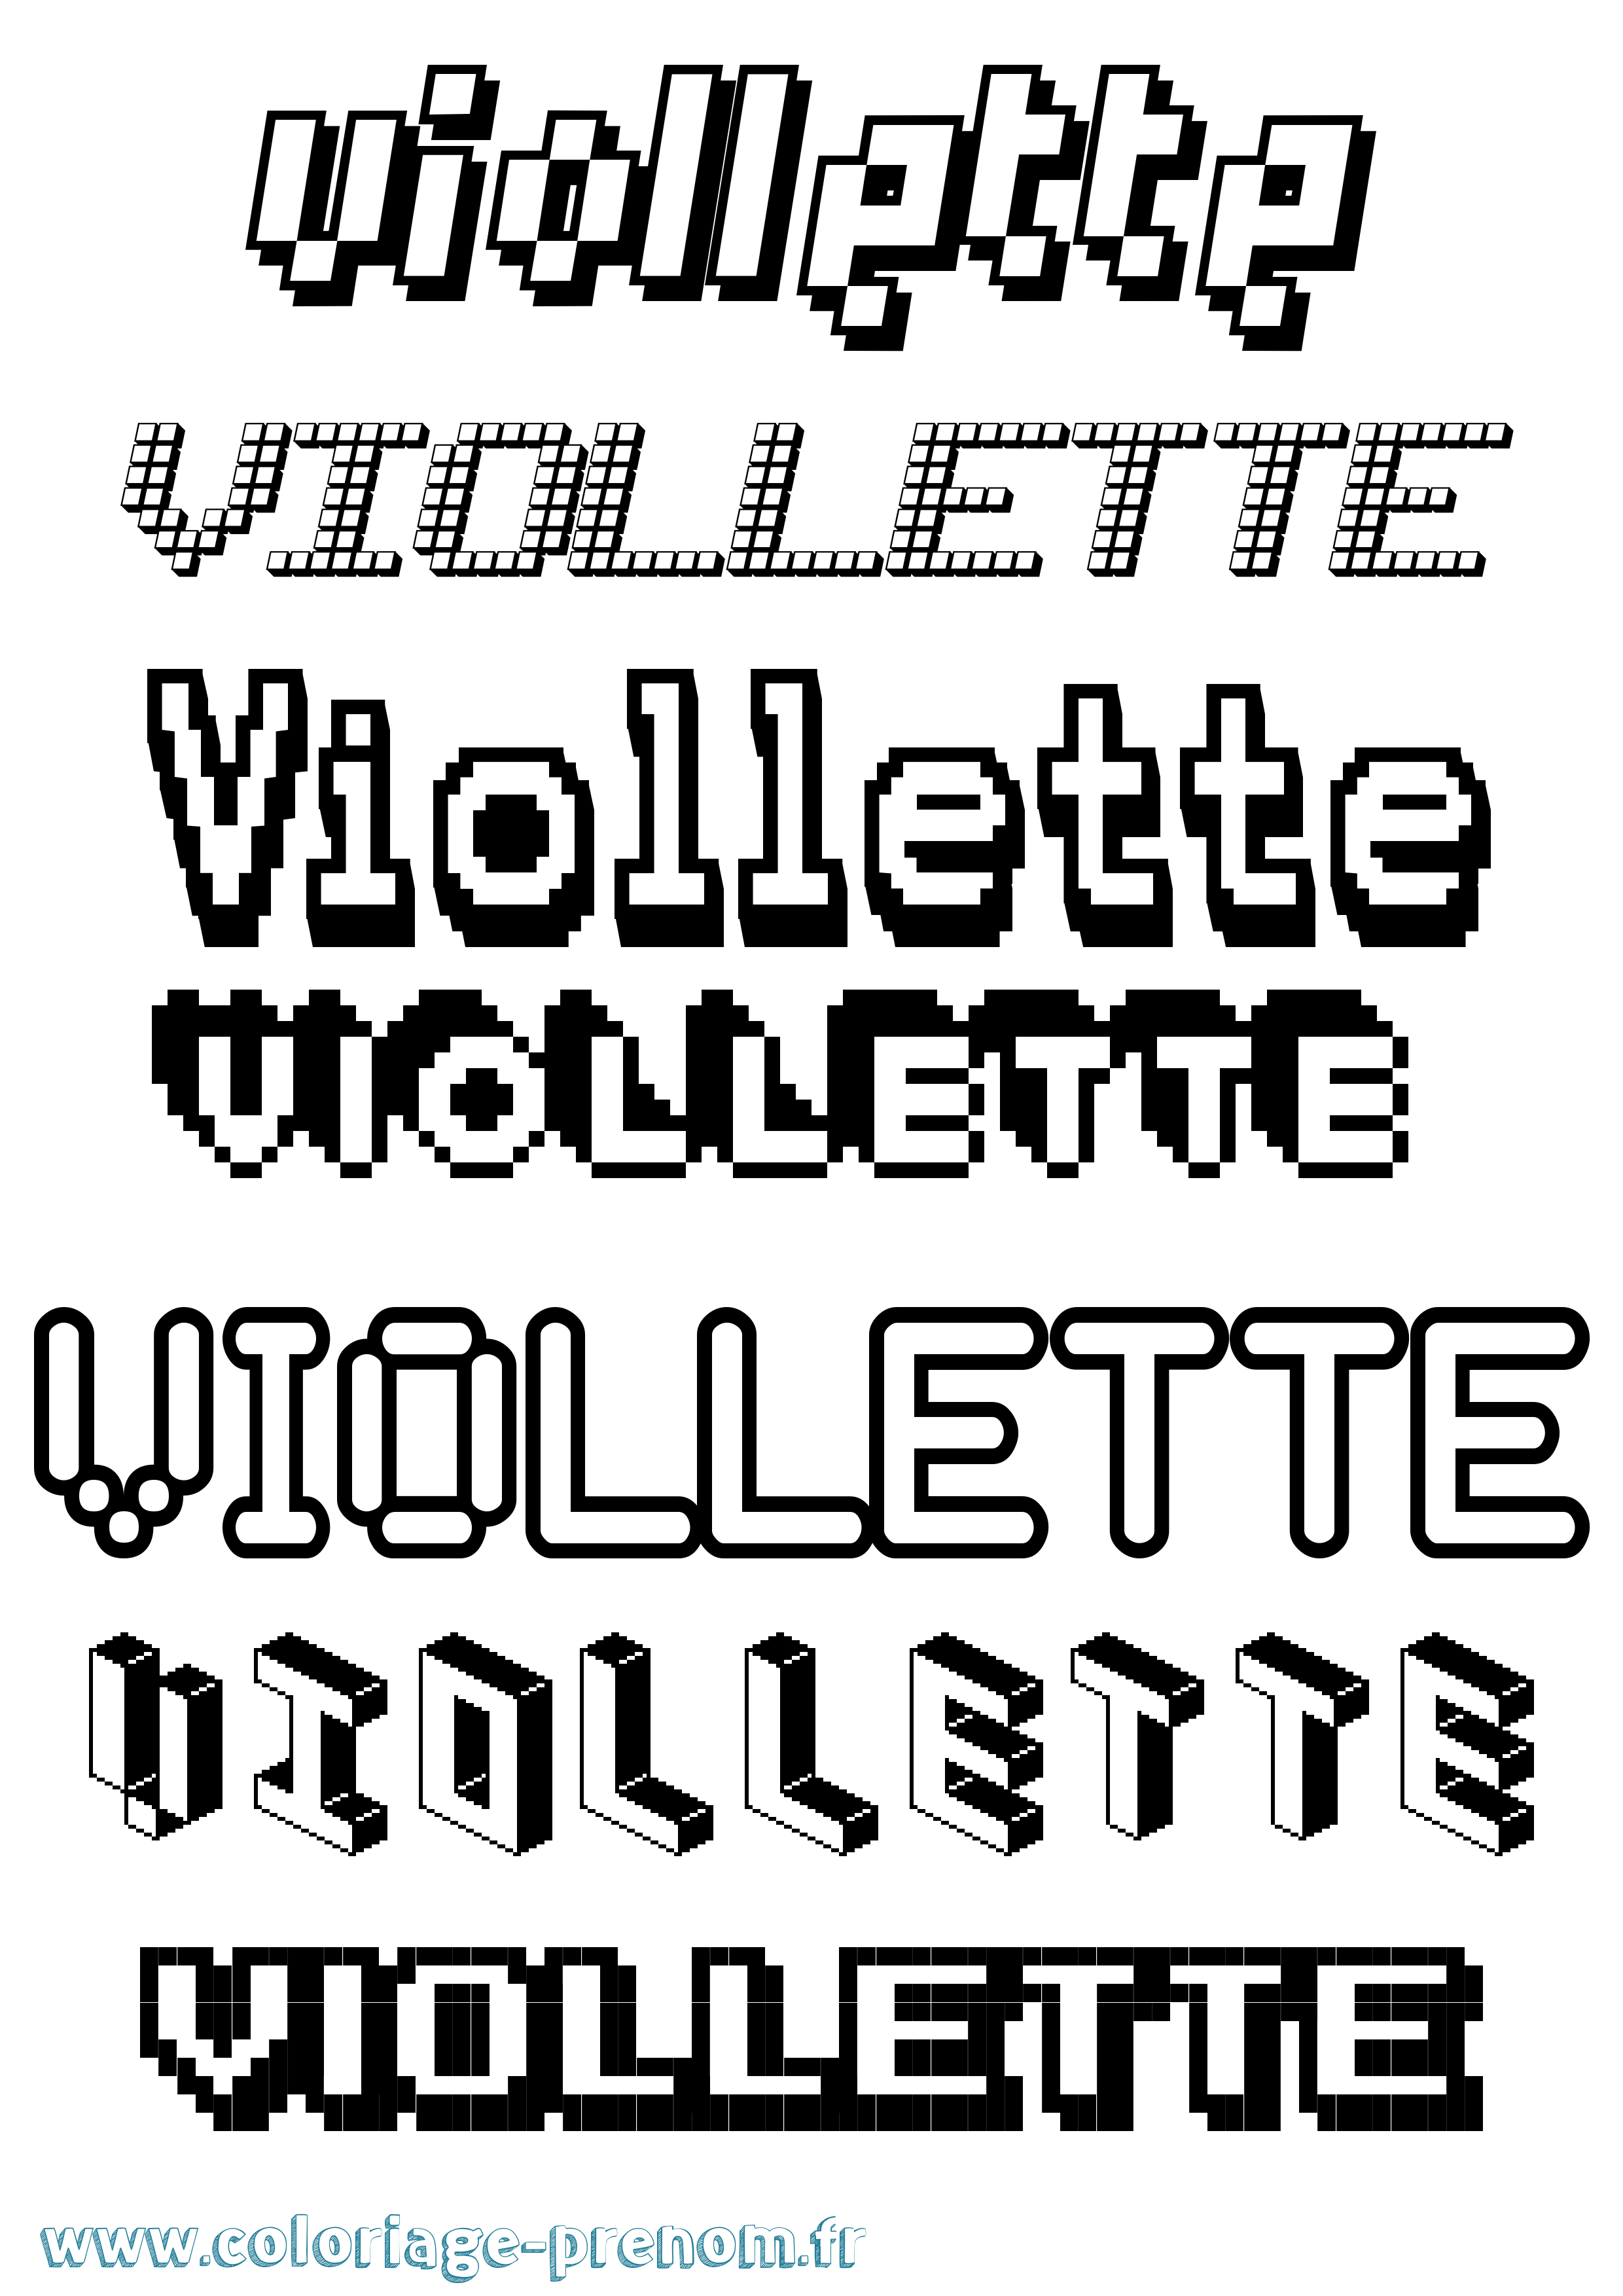 Coloriage prénom Viollette Pixel